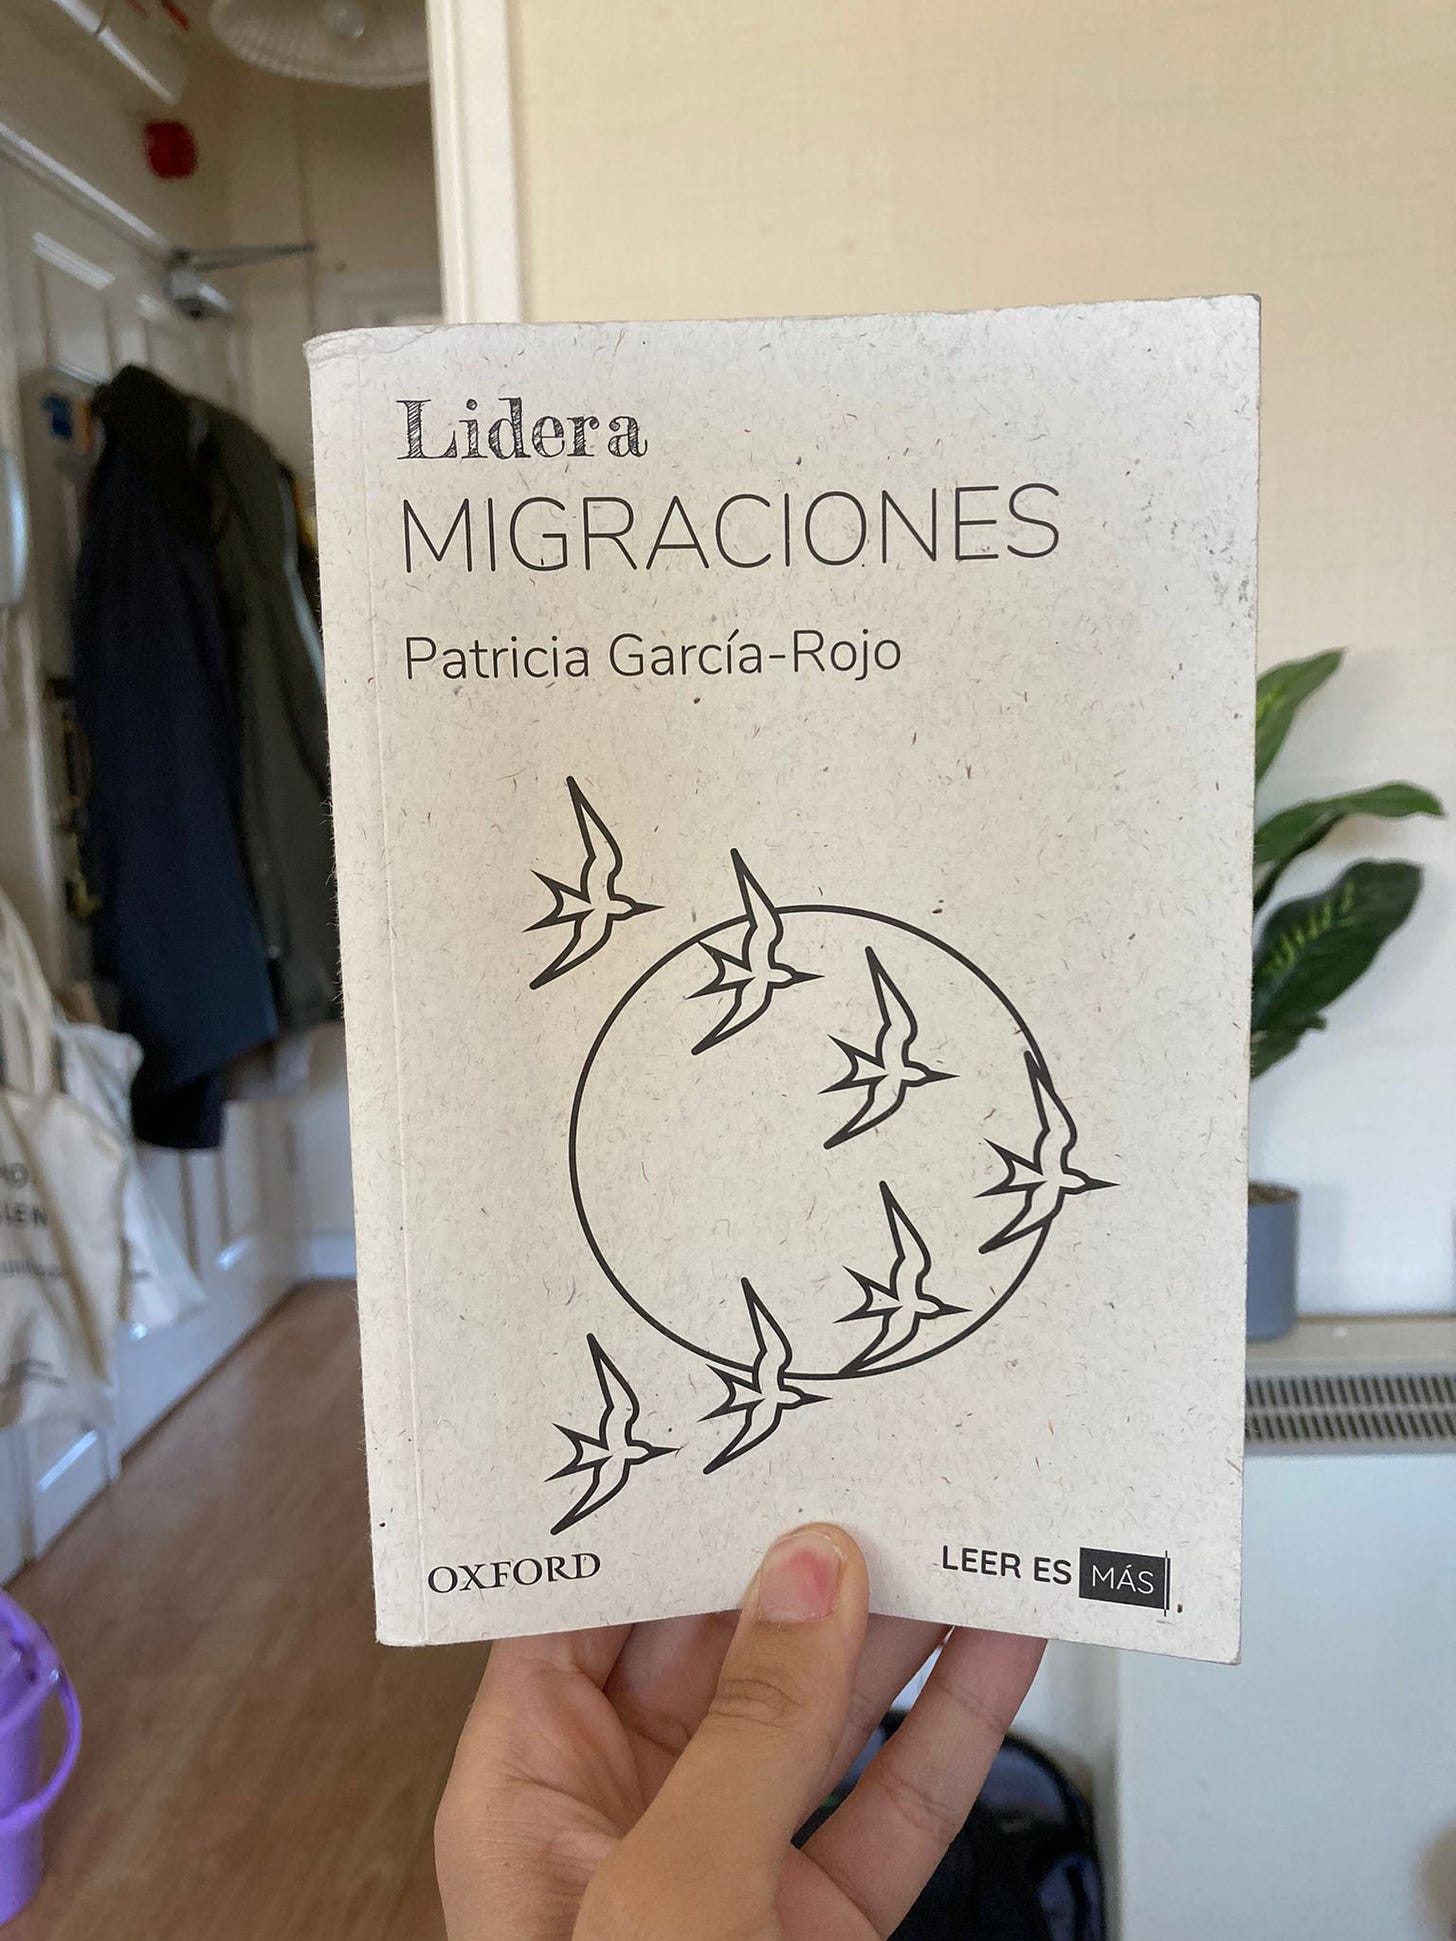 Portada del libro "Migraciones", de Patricia García Rojo.